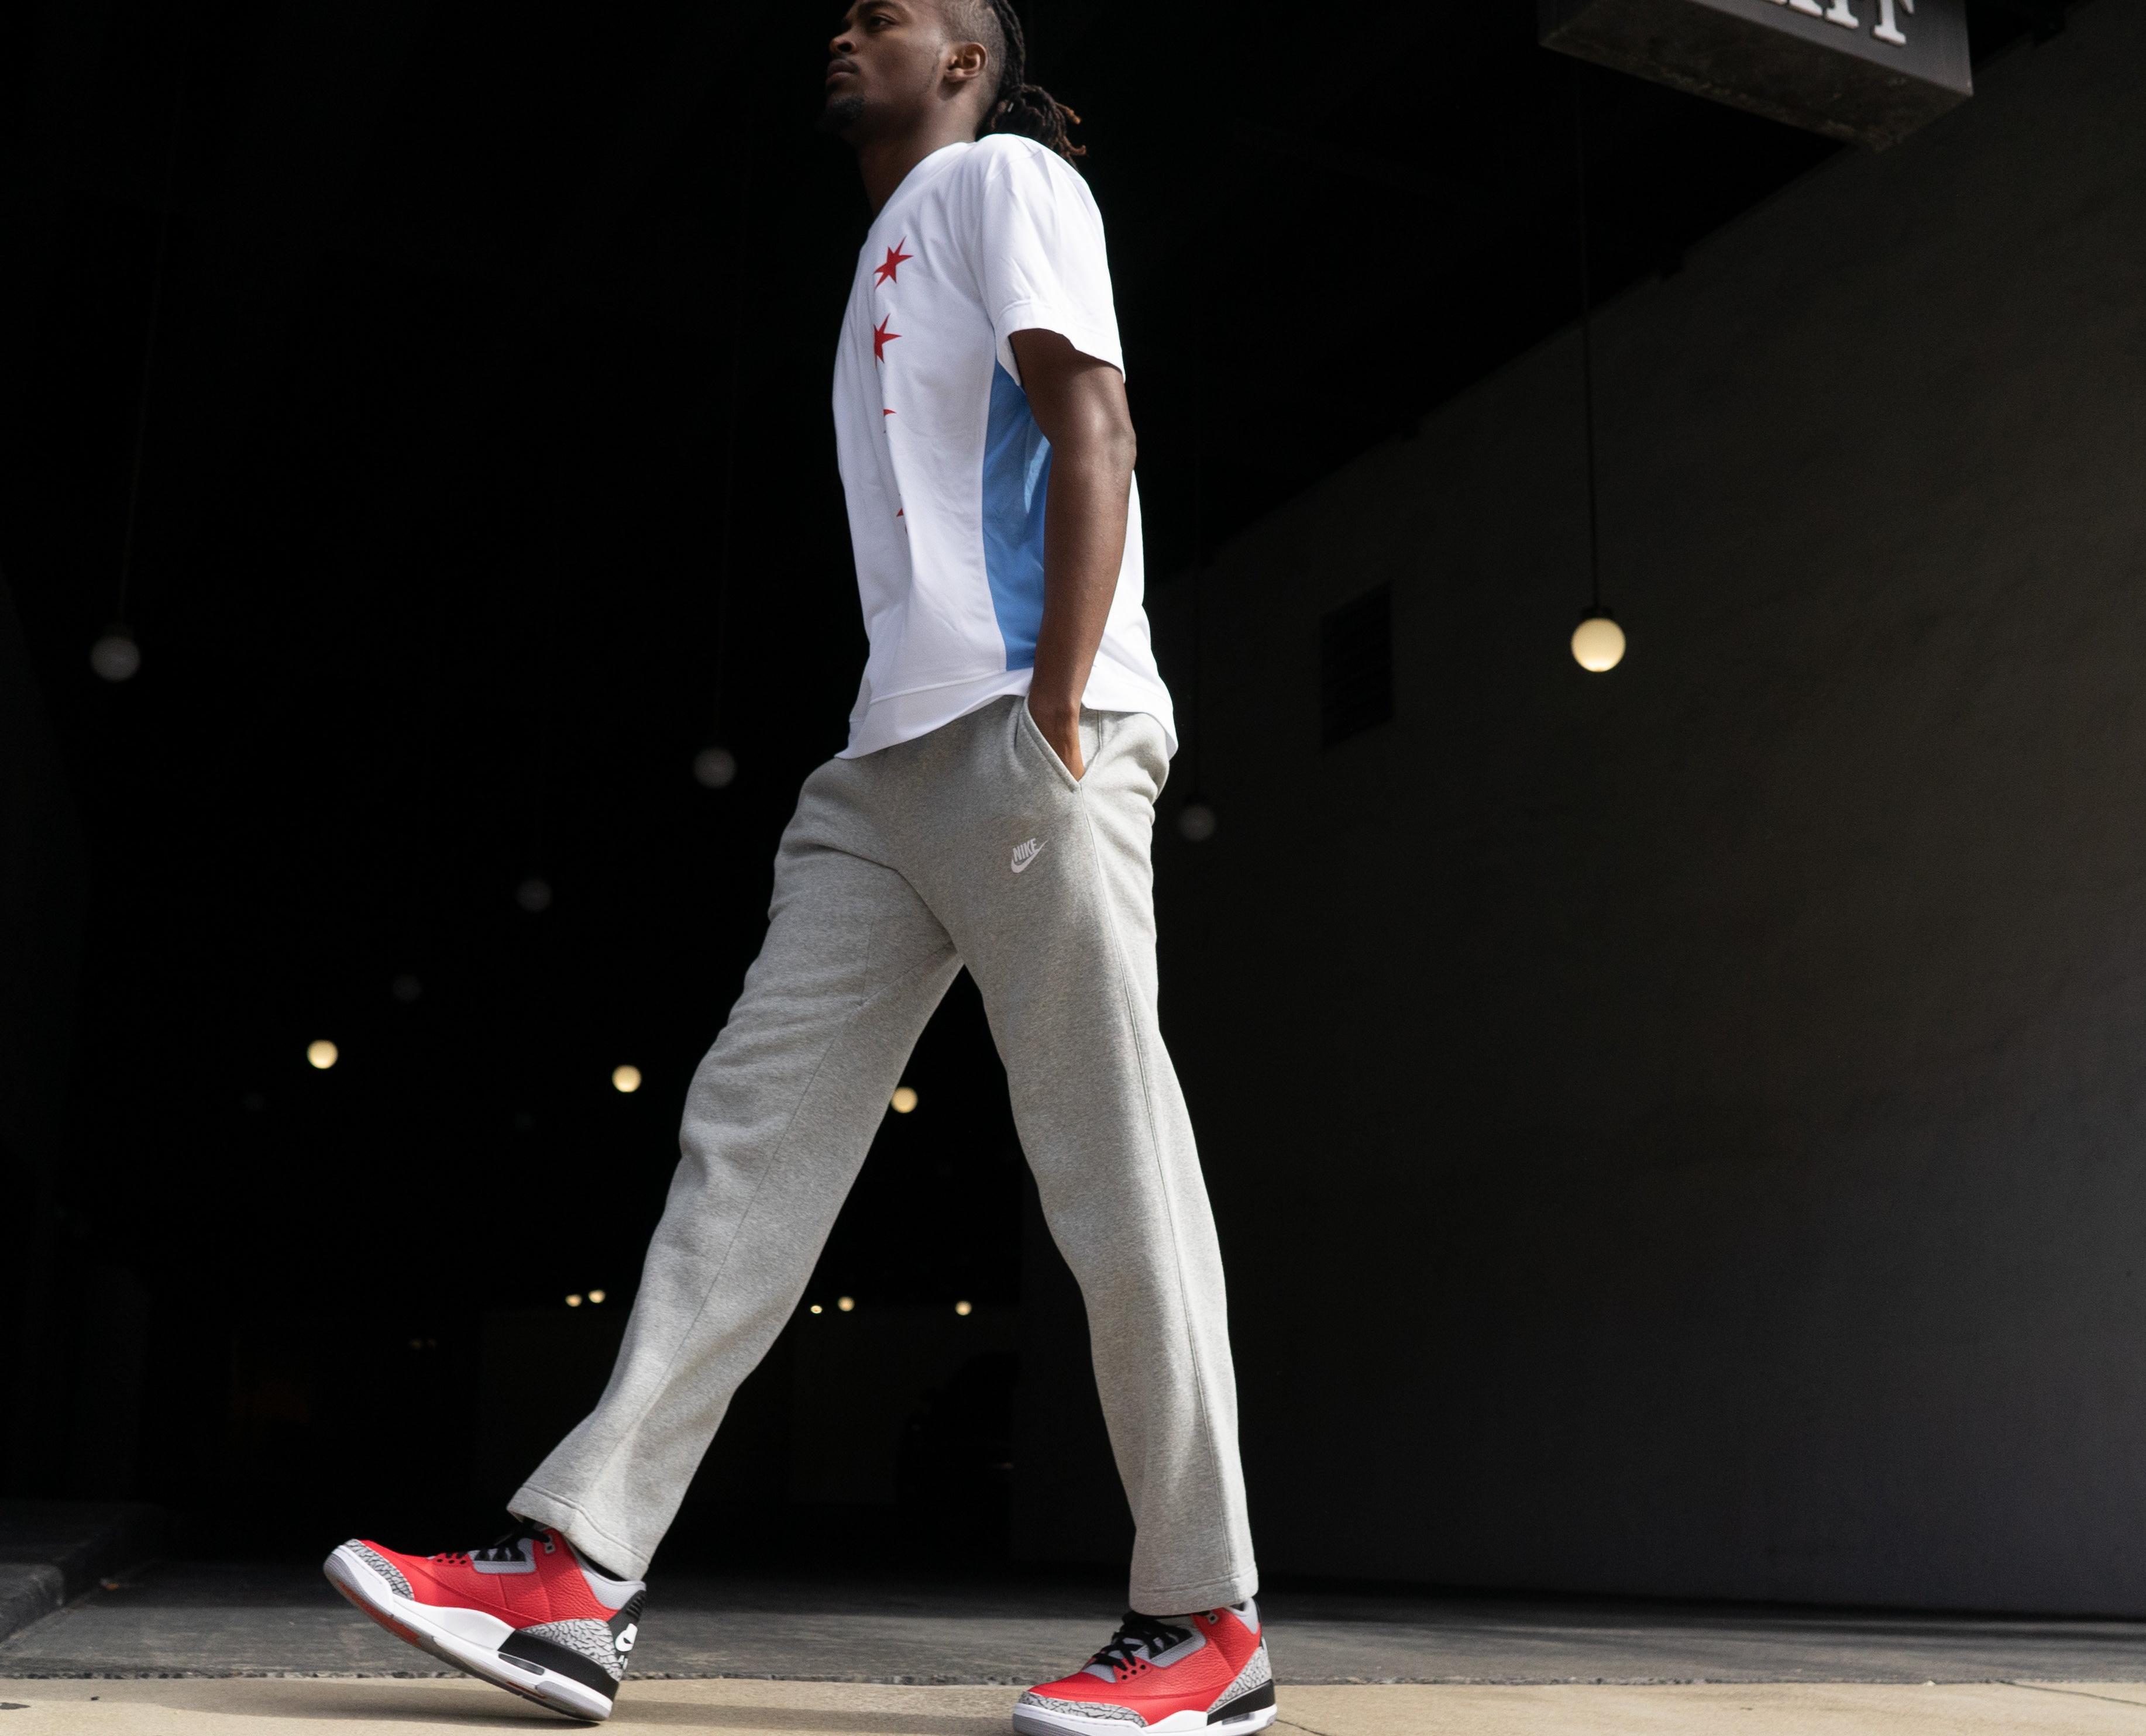 Sneakers Release – Air Jordan Retro 3 “Unite”